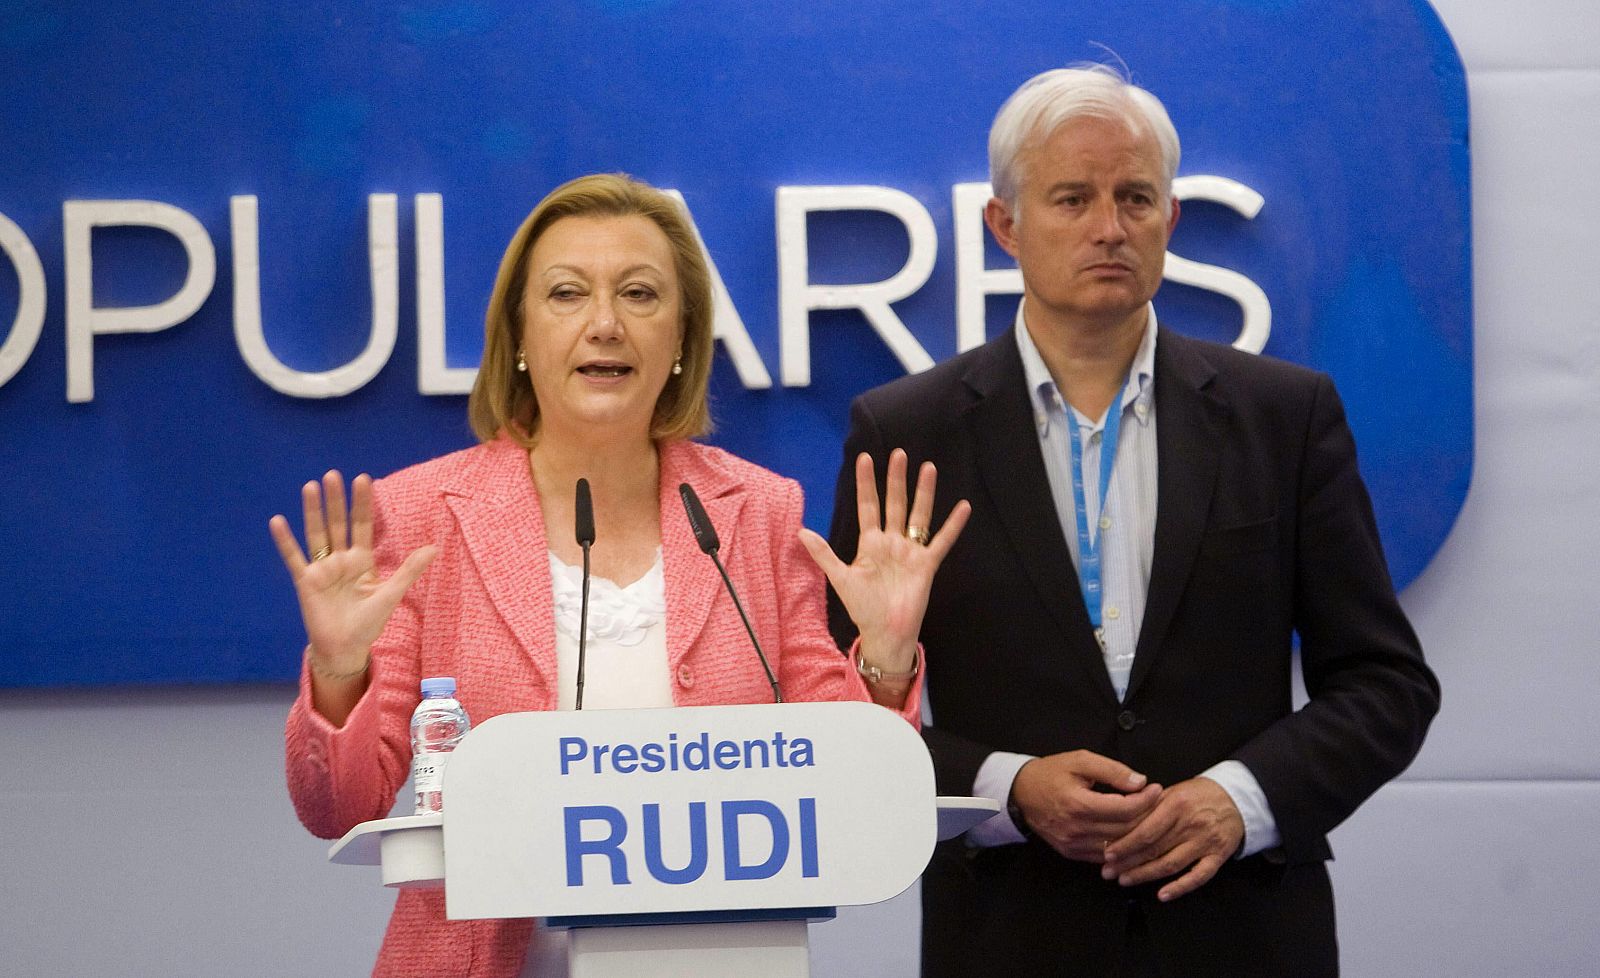 La presidenta de Aragón y candidata a la reelección, Luisa Fernanda Rudi, y el candidato a la alcaldía, Eloy Suárez, comparecen para comentar los resultados electorales.